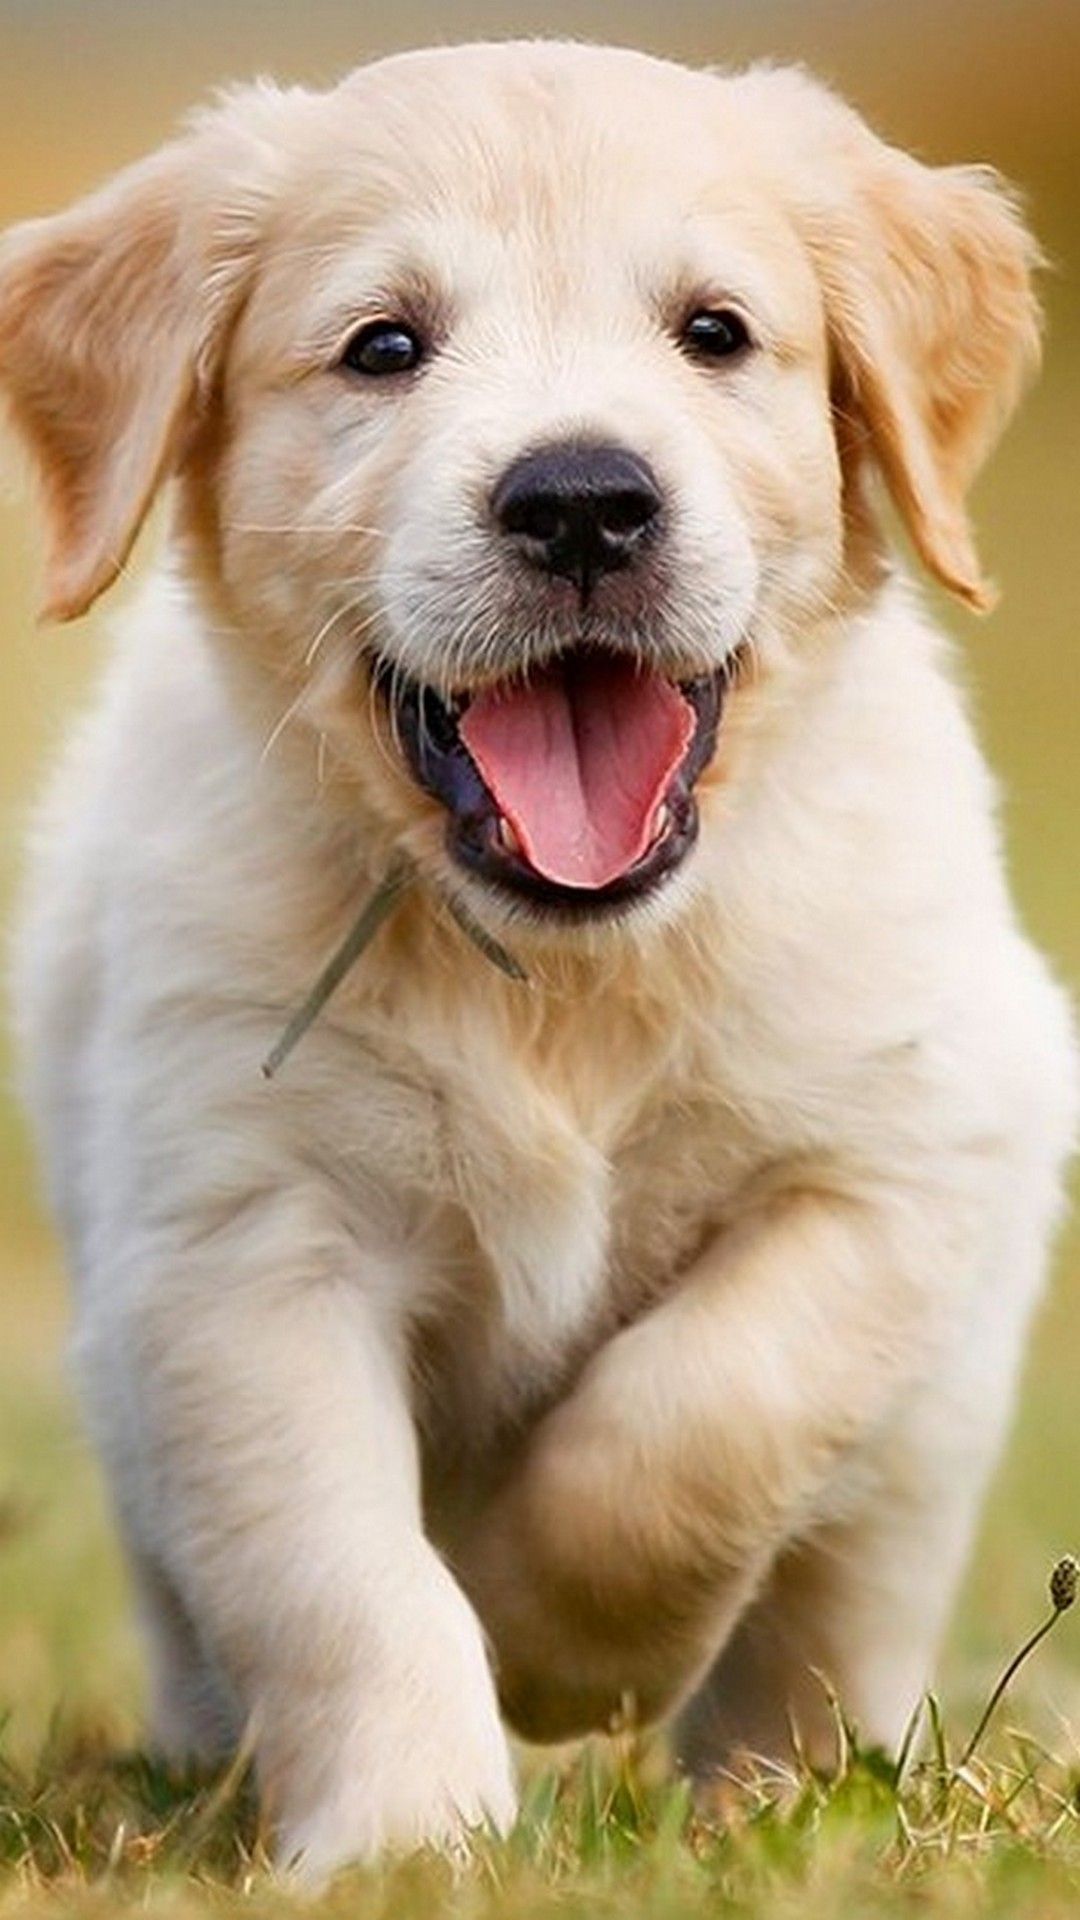 [36+] Cute Dog HD Wallpapers | WallpaperSafari.com